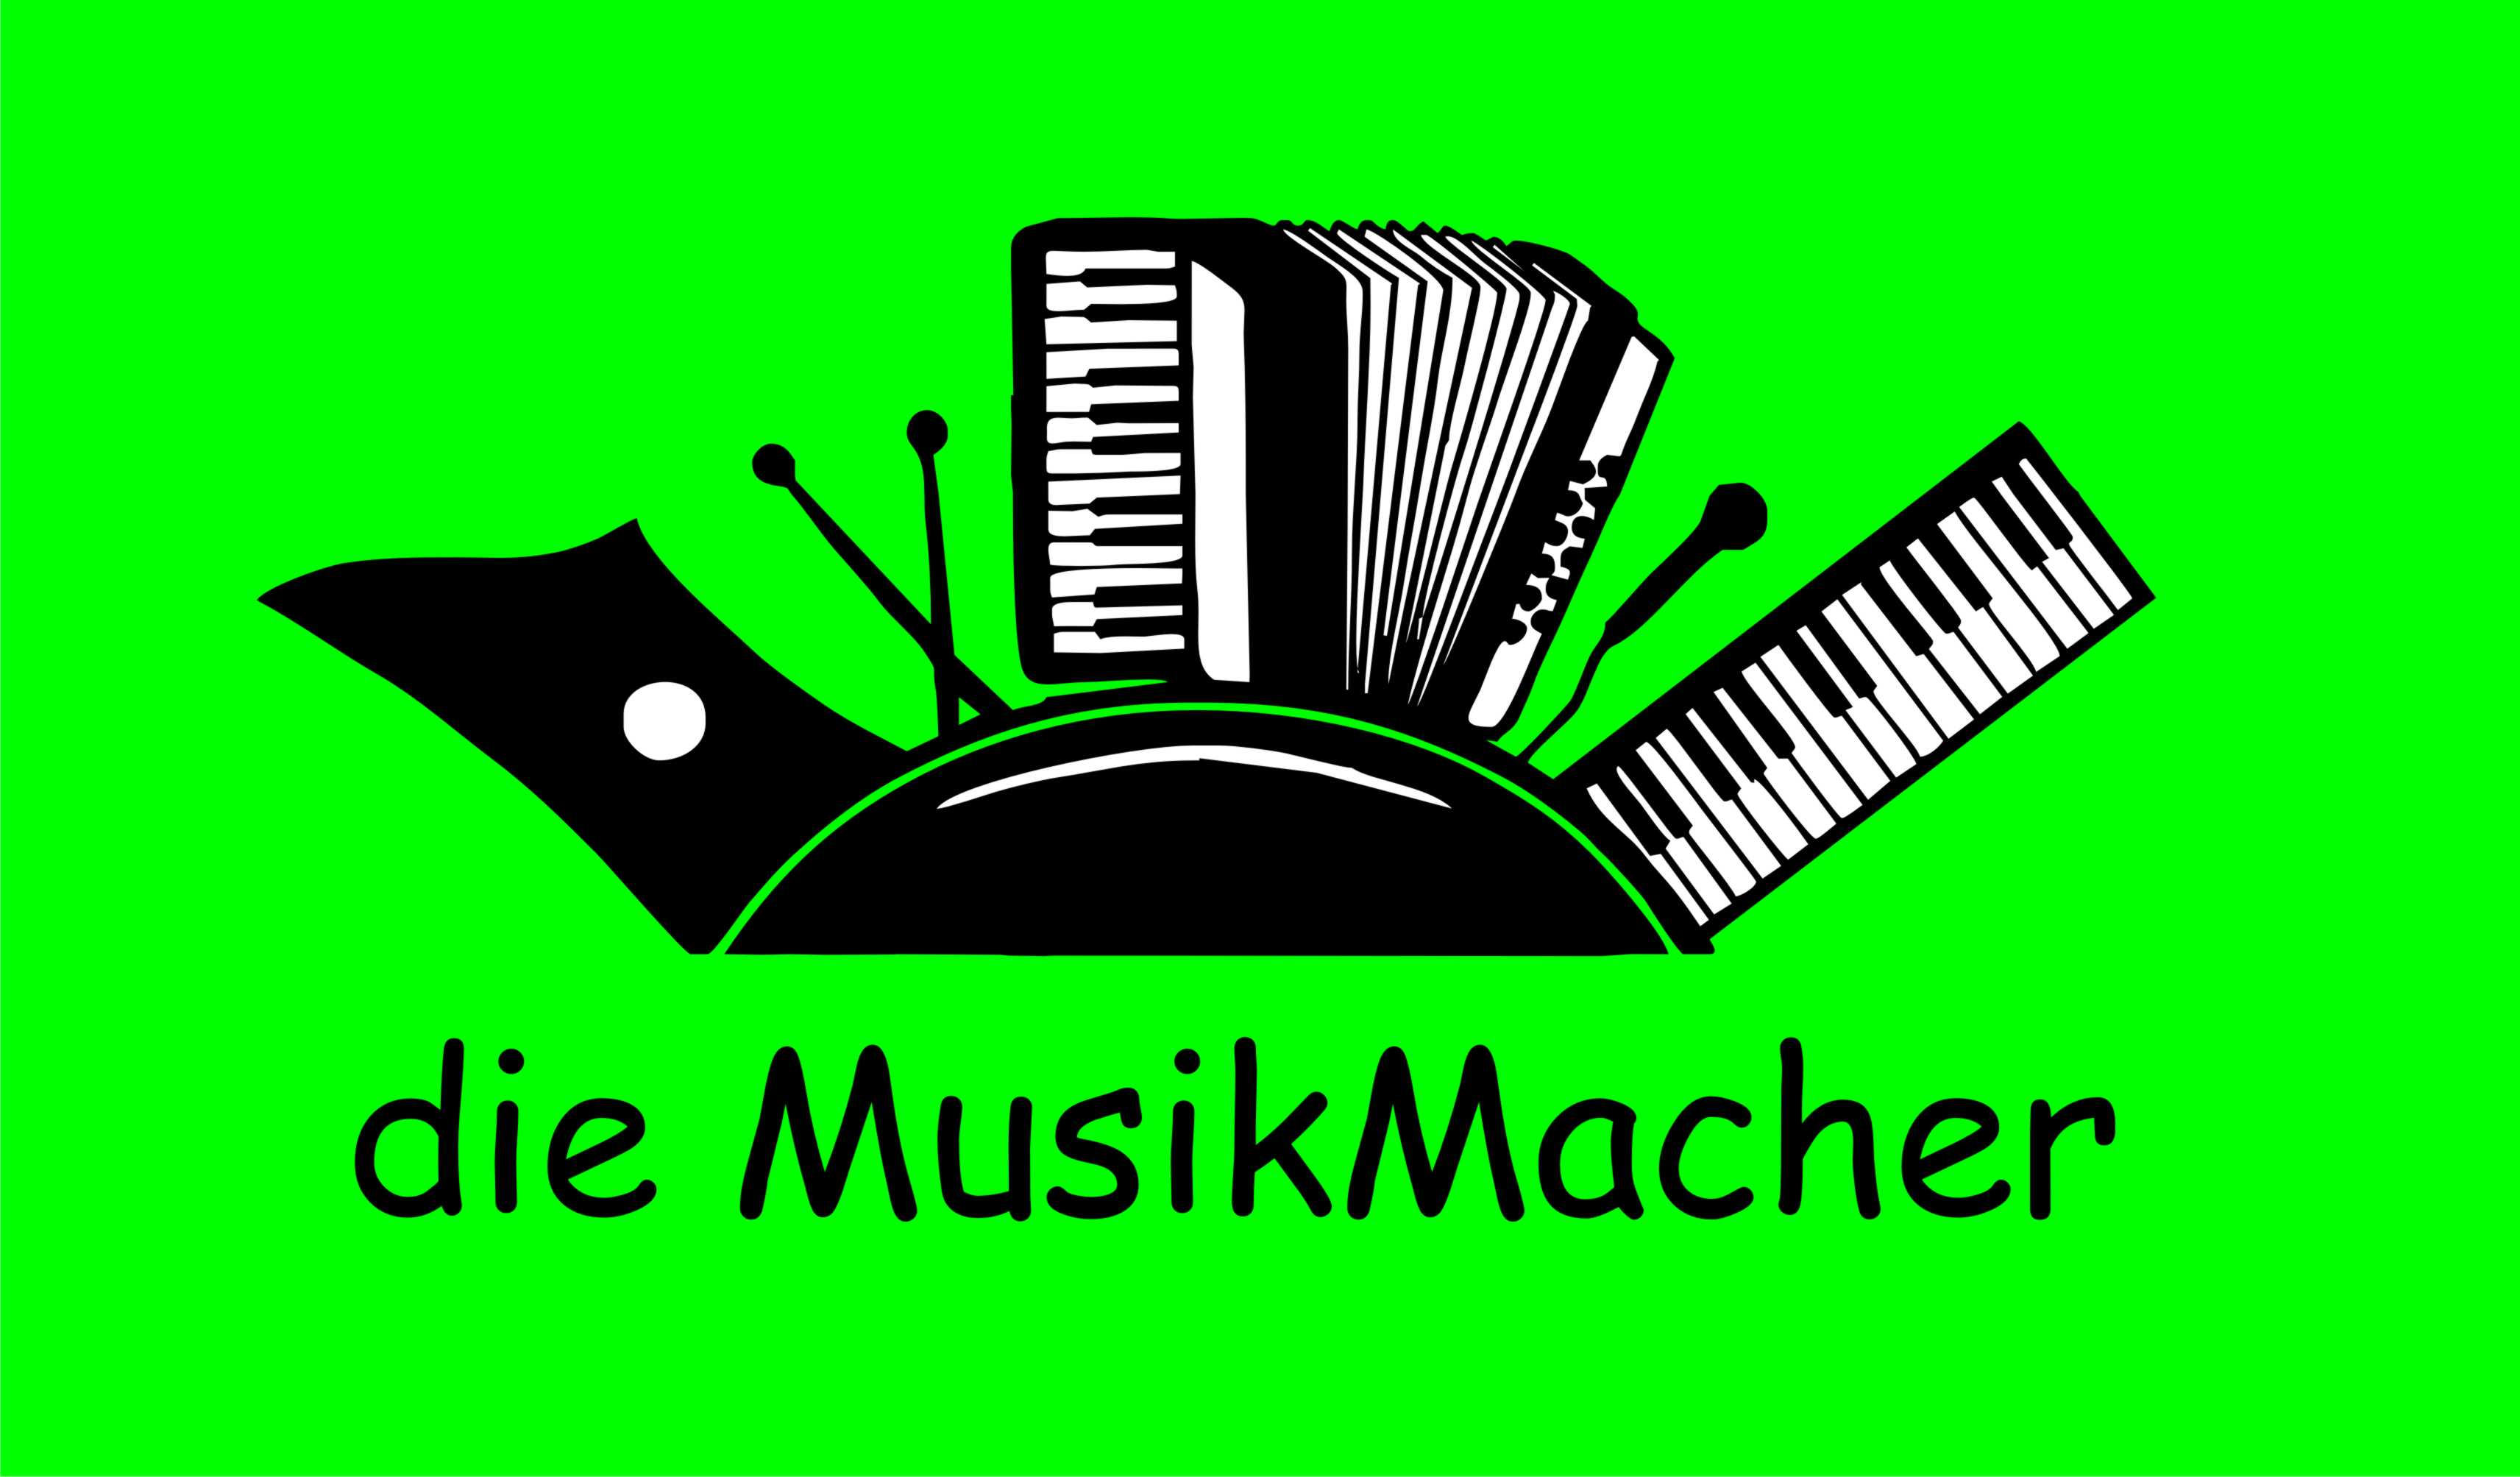 die musikmacher logo